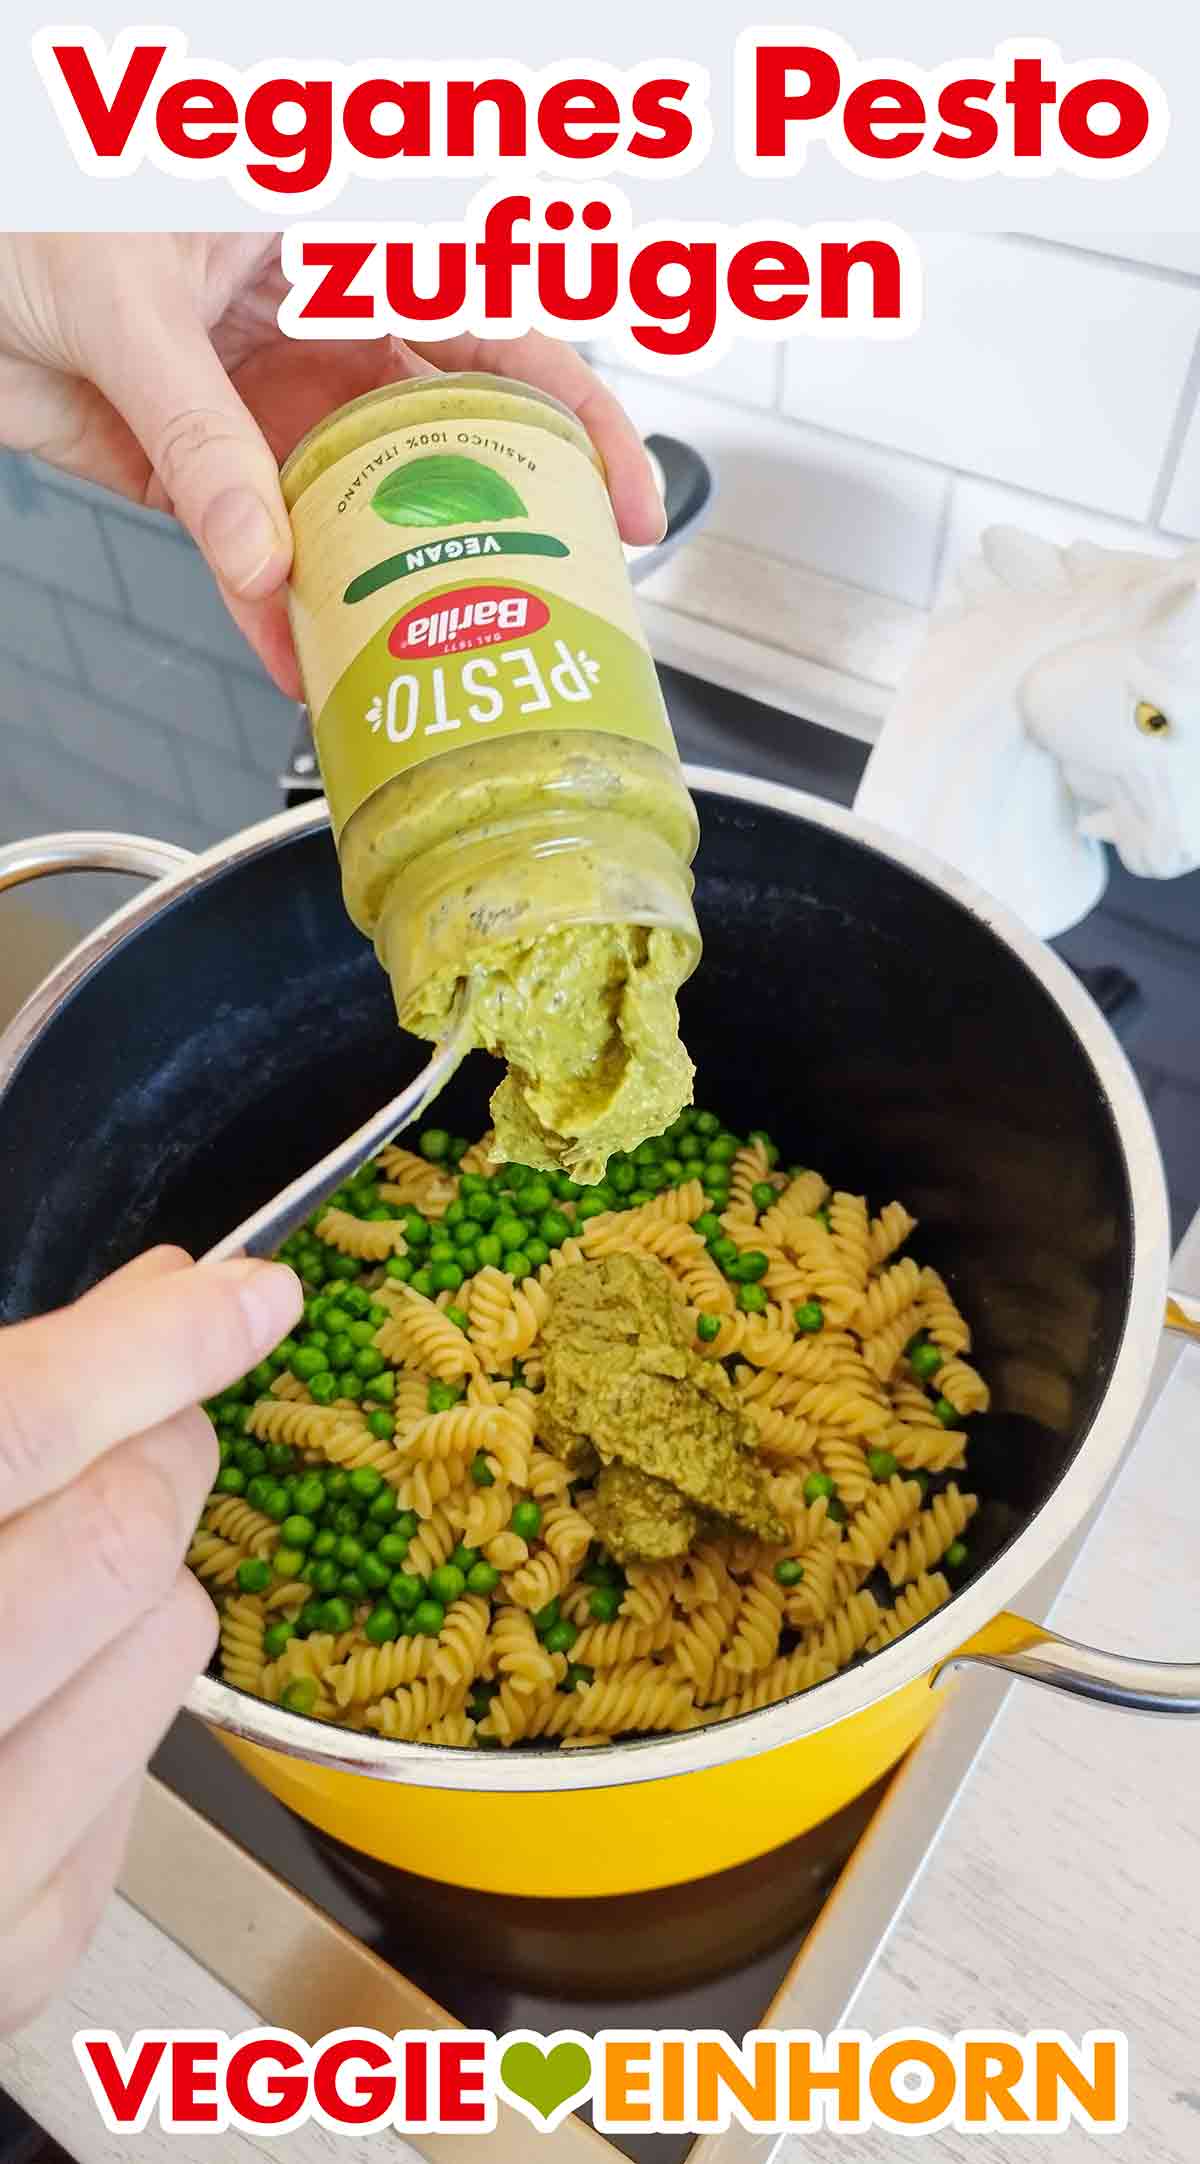 Das vegane Pesto wird in den Topf zu den Nudeln und Erbsen zugefügt.